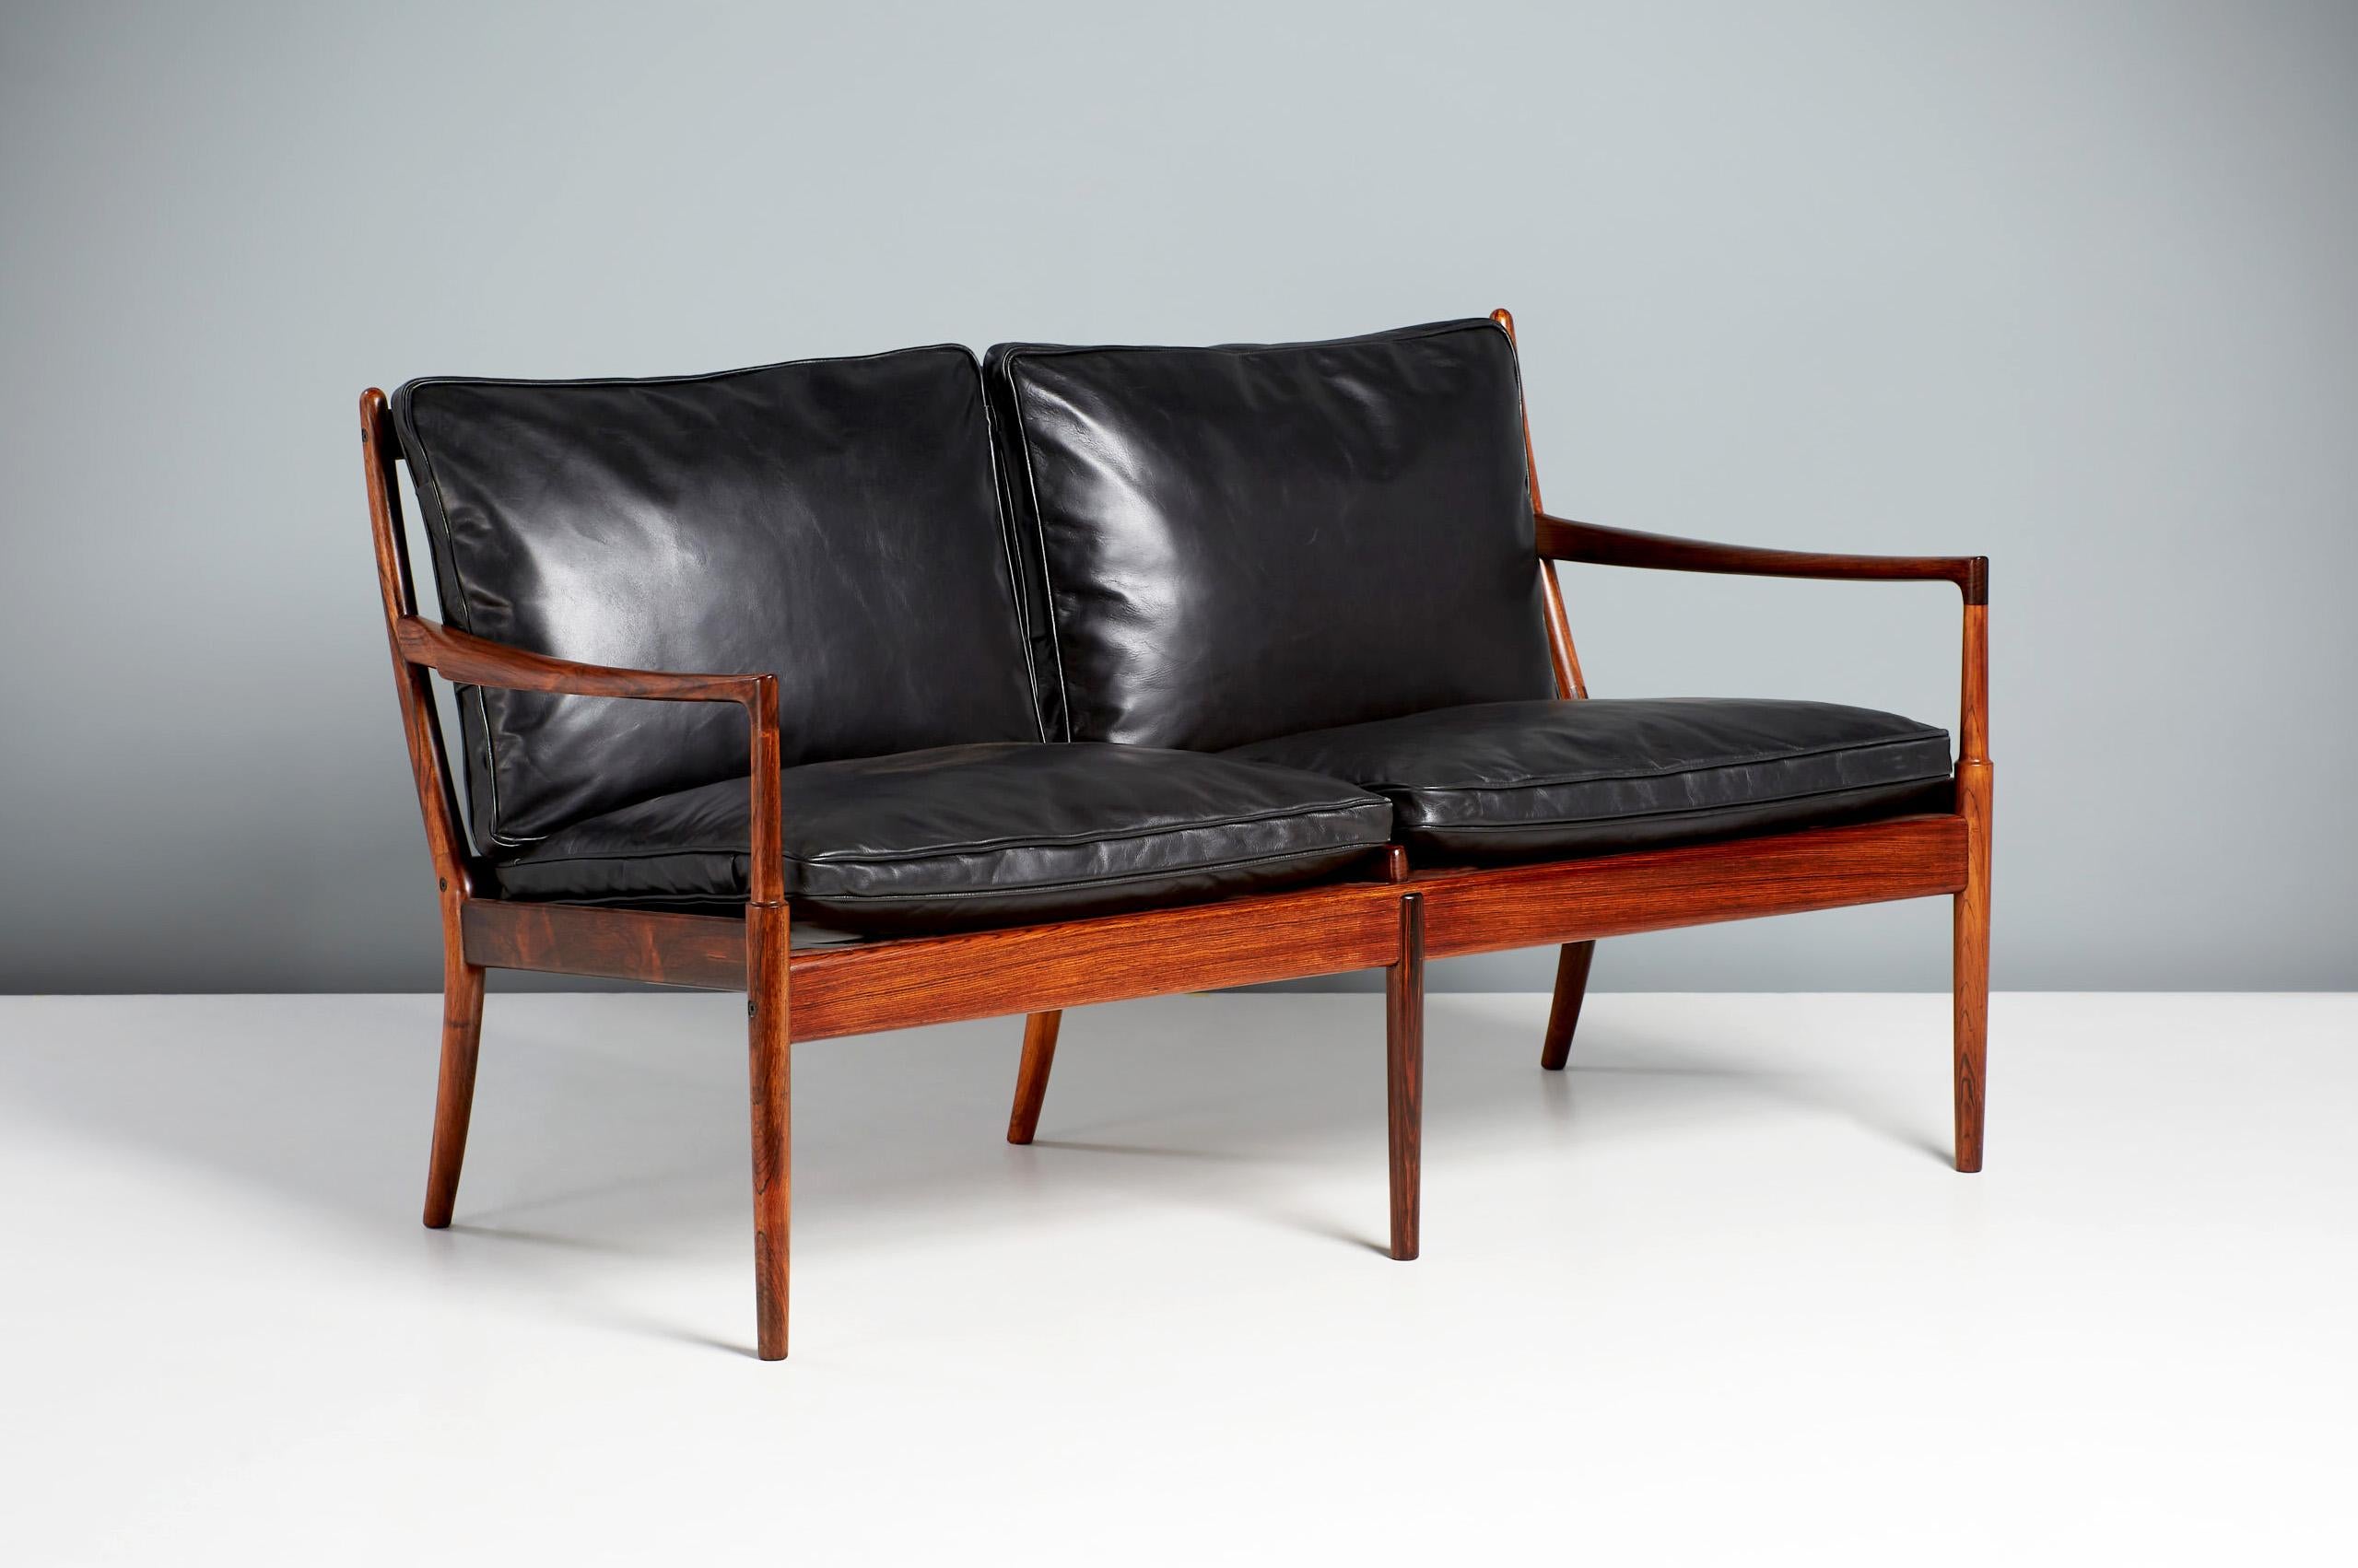 Ib Kofod-Larsen - Samso Sofa, um 1958

Ein selten gesehenes kleines Sofa, hergestellt von Olof Perssons Fatoljindustri (OPE), Jonkoping, Schweden. Dieses 2-Sitzer-Sofa wurde in sehr begrenzter Stückzahl zusammen mit dem kultigen Samso-Sessel